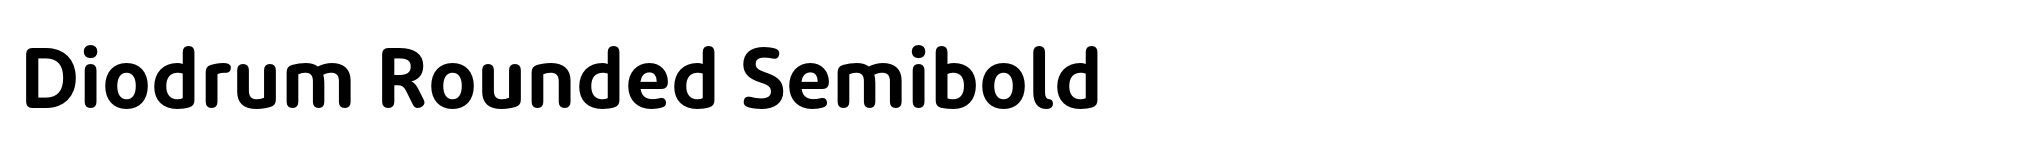 Diodrum Rounded Semibold image